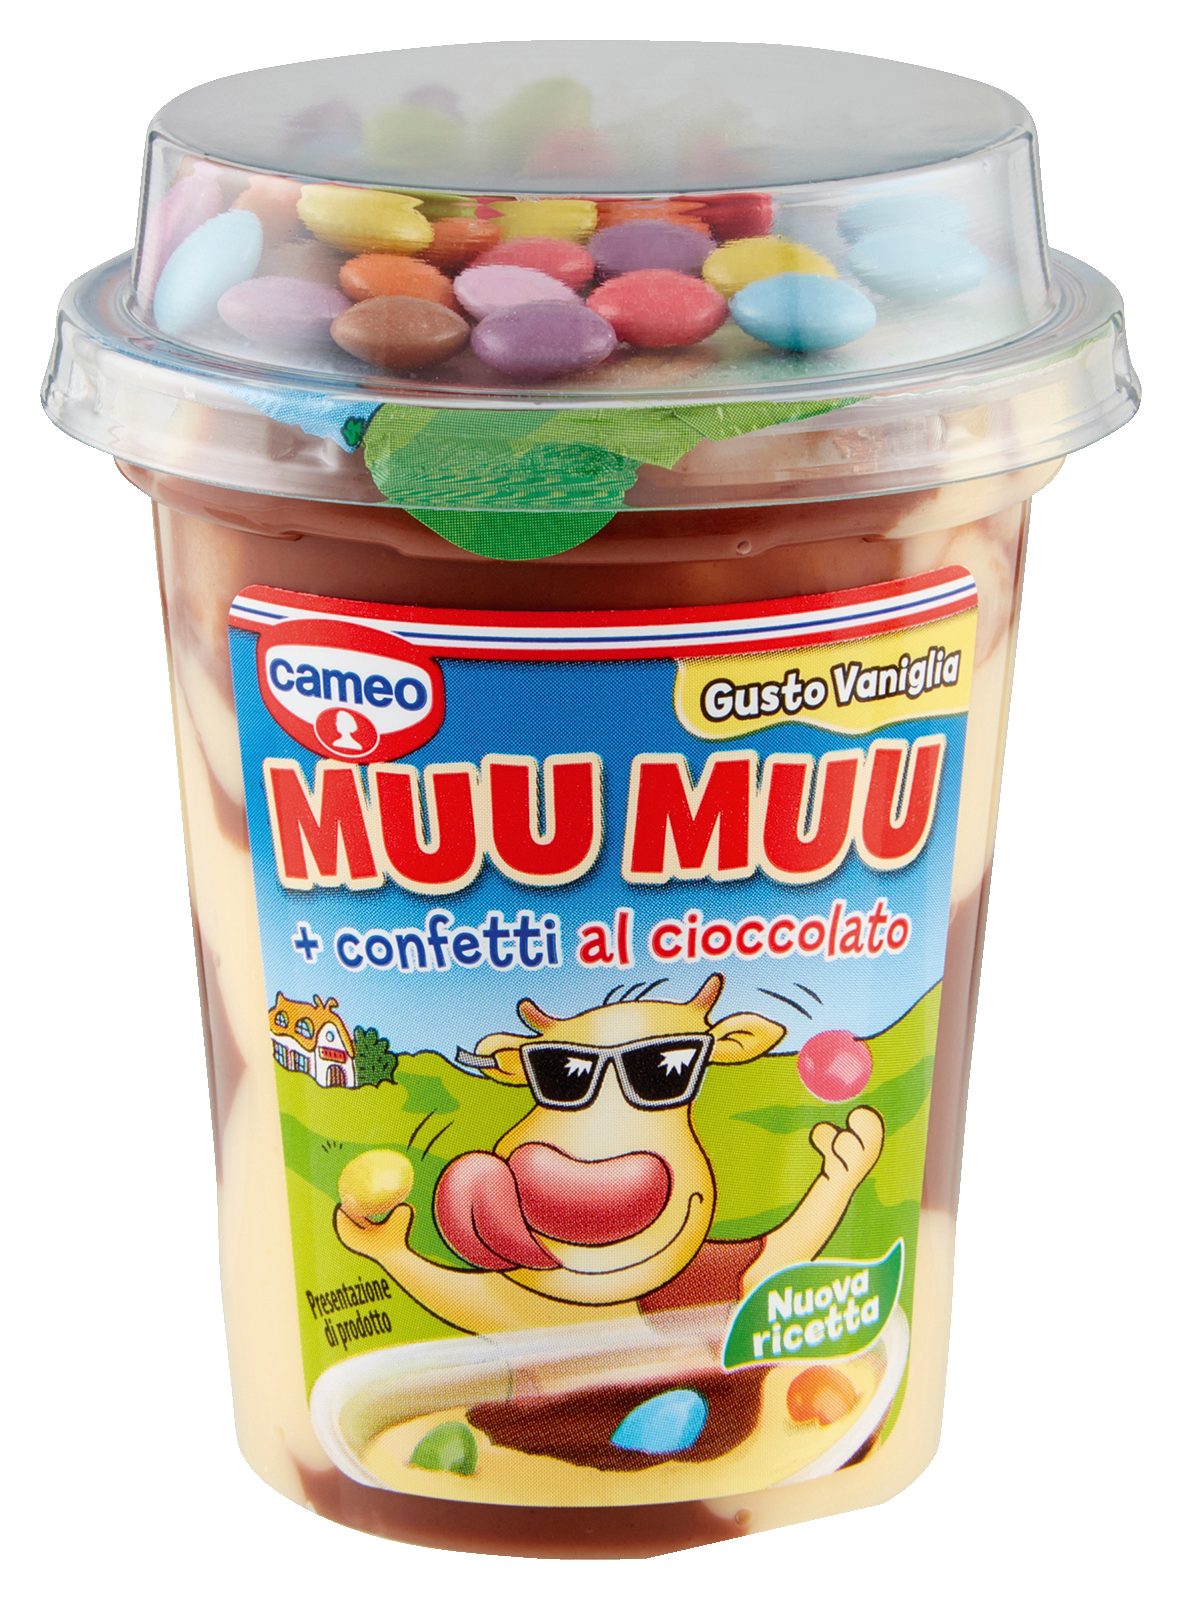 Dessert Muu Muu con confetti